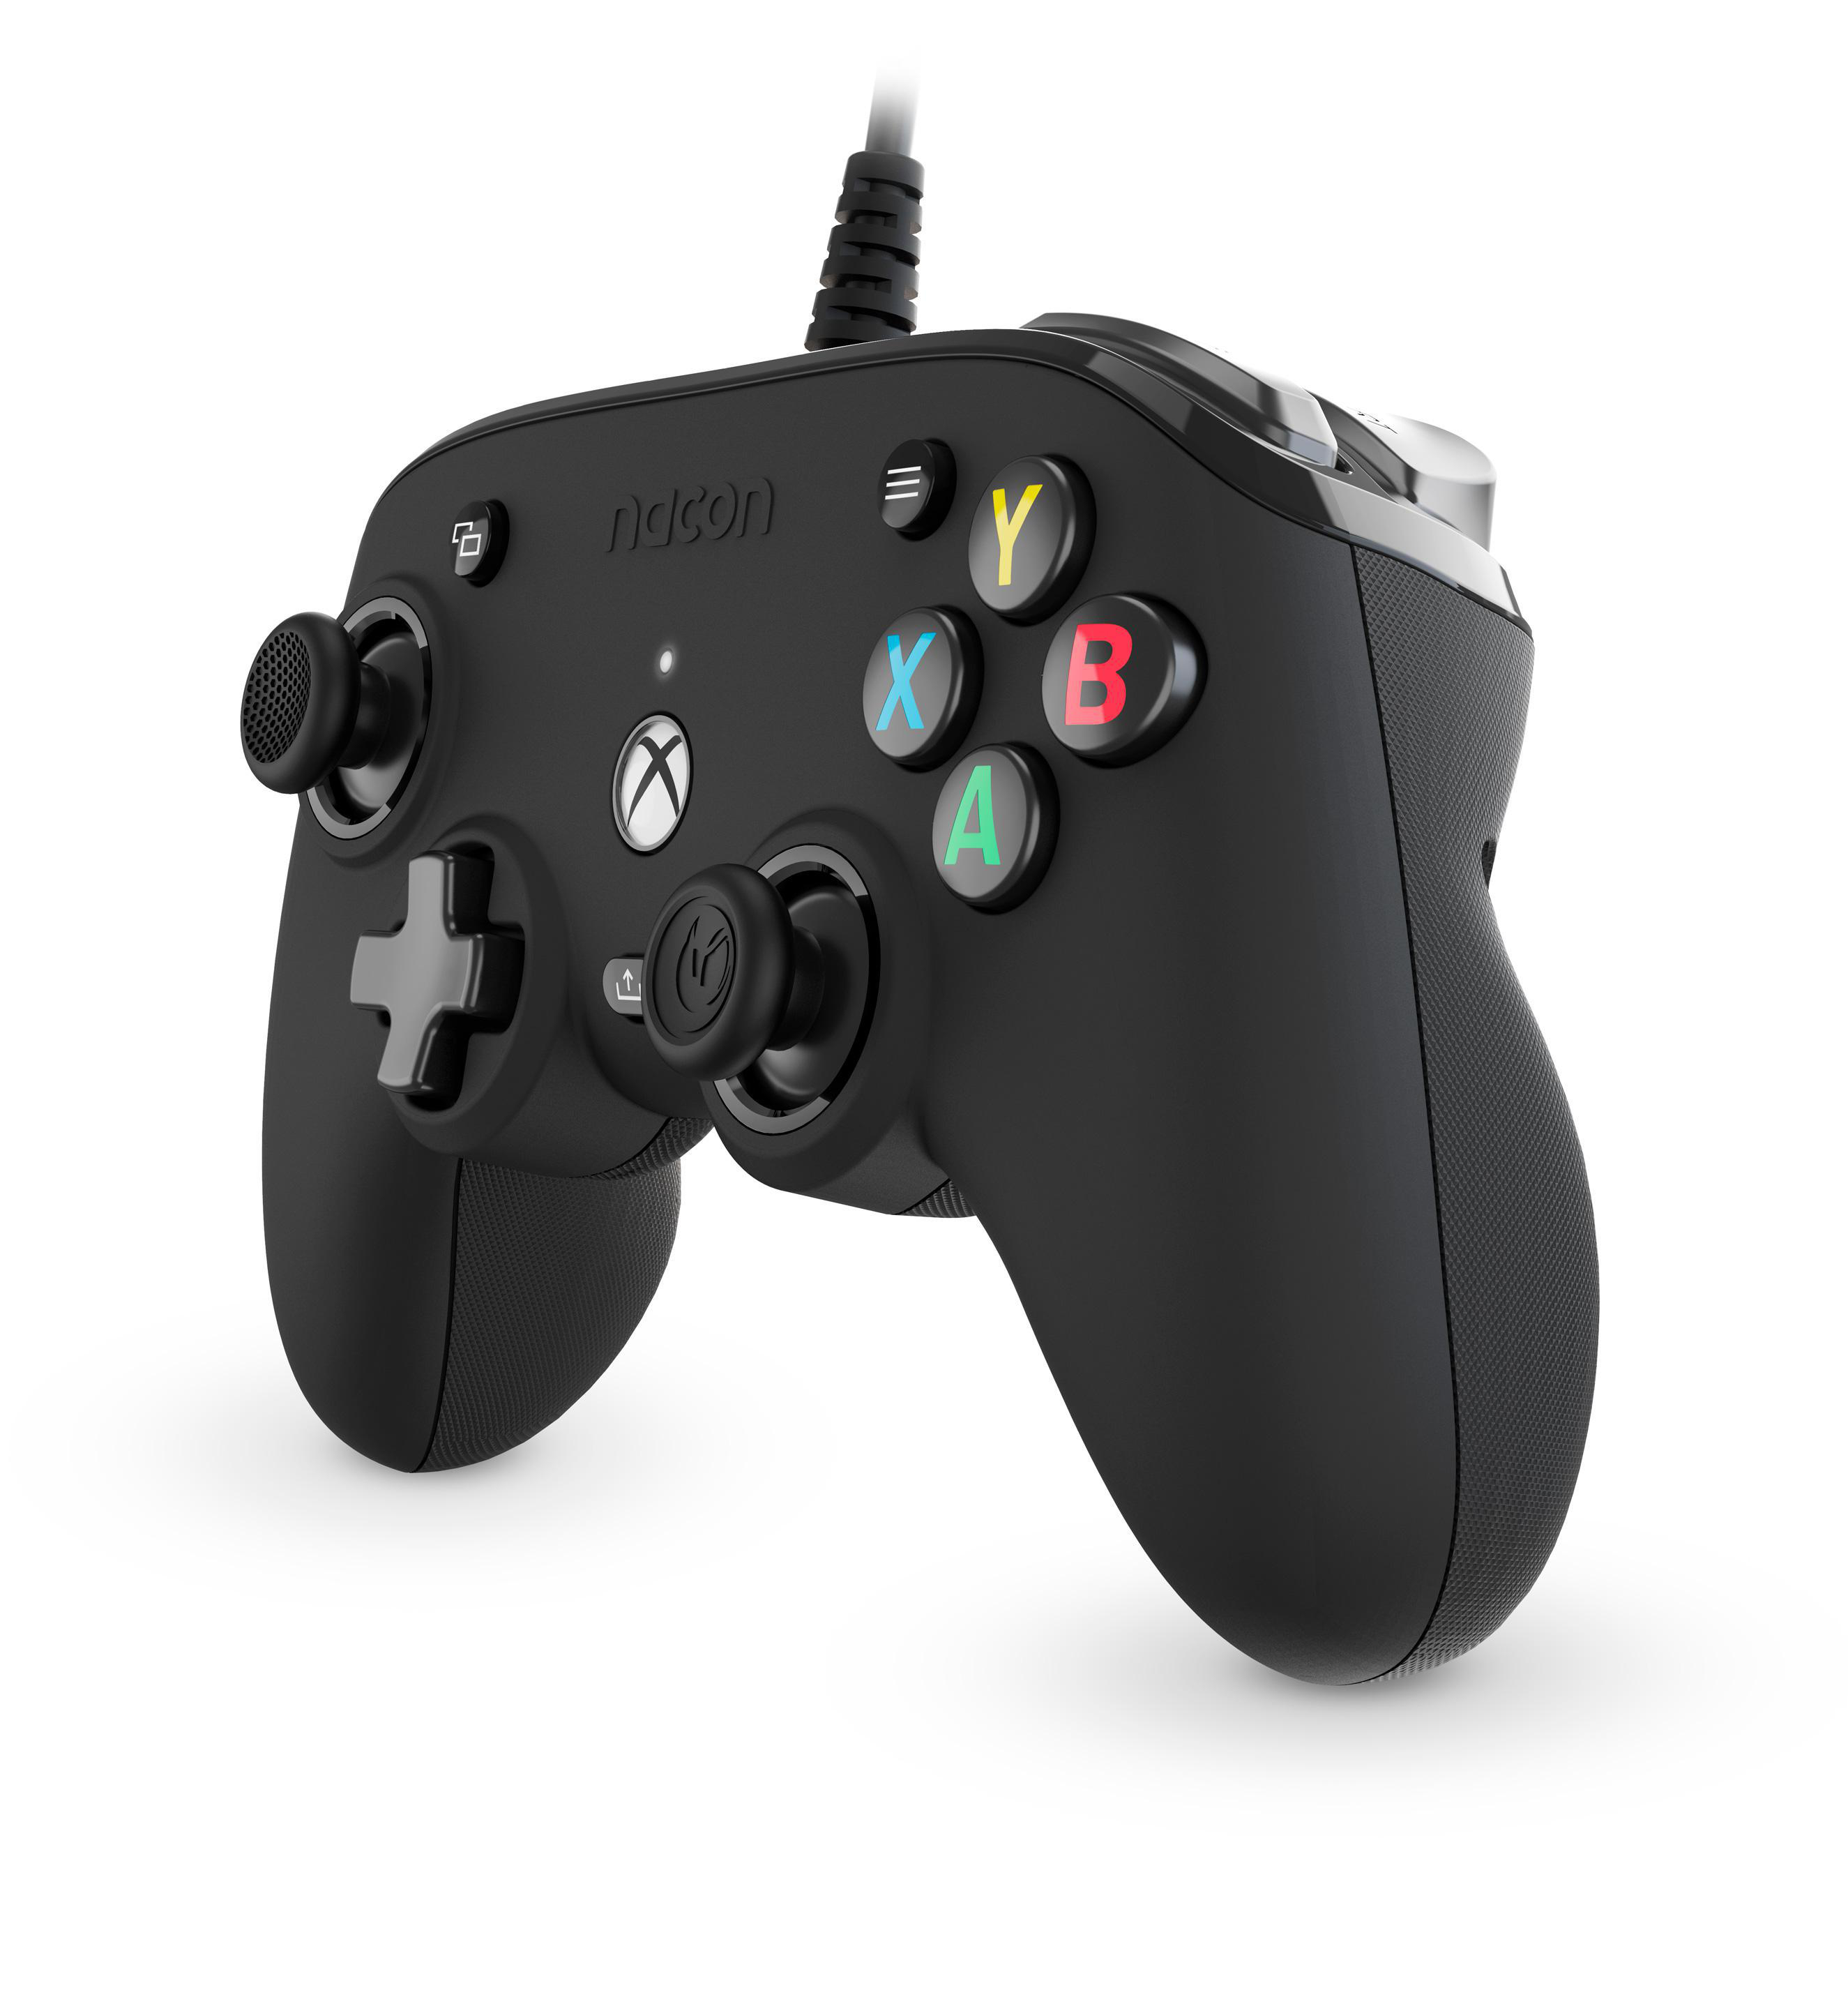 One Xbox DESIGND NACON Controller Series SCHWARZ CON. Schwarz XBOX COMPACT FOR XBOX X, PRO Xbox Controller NACON für